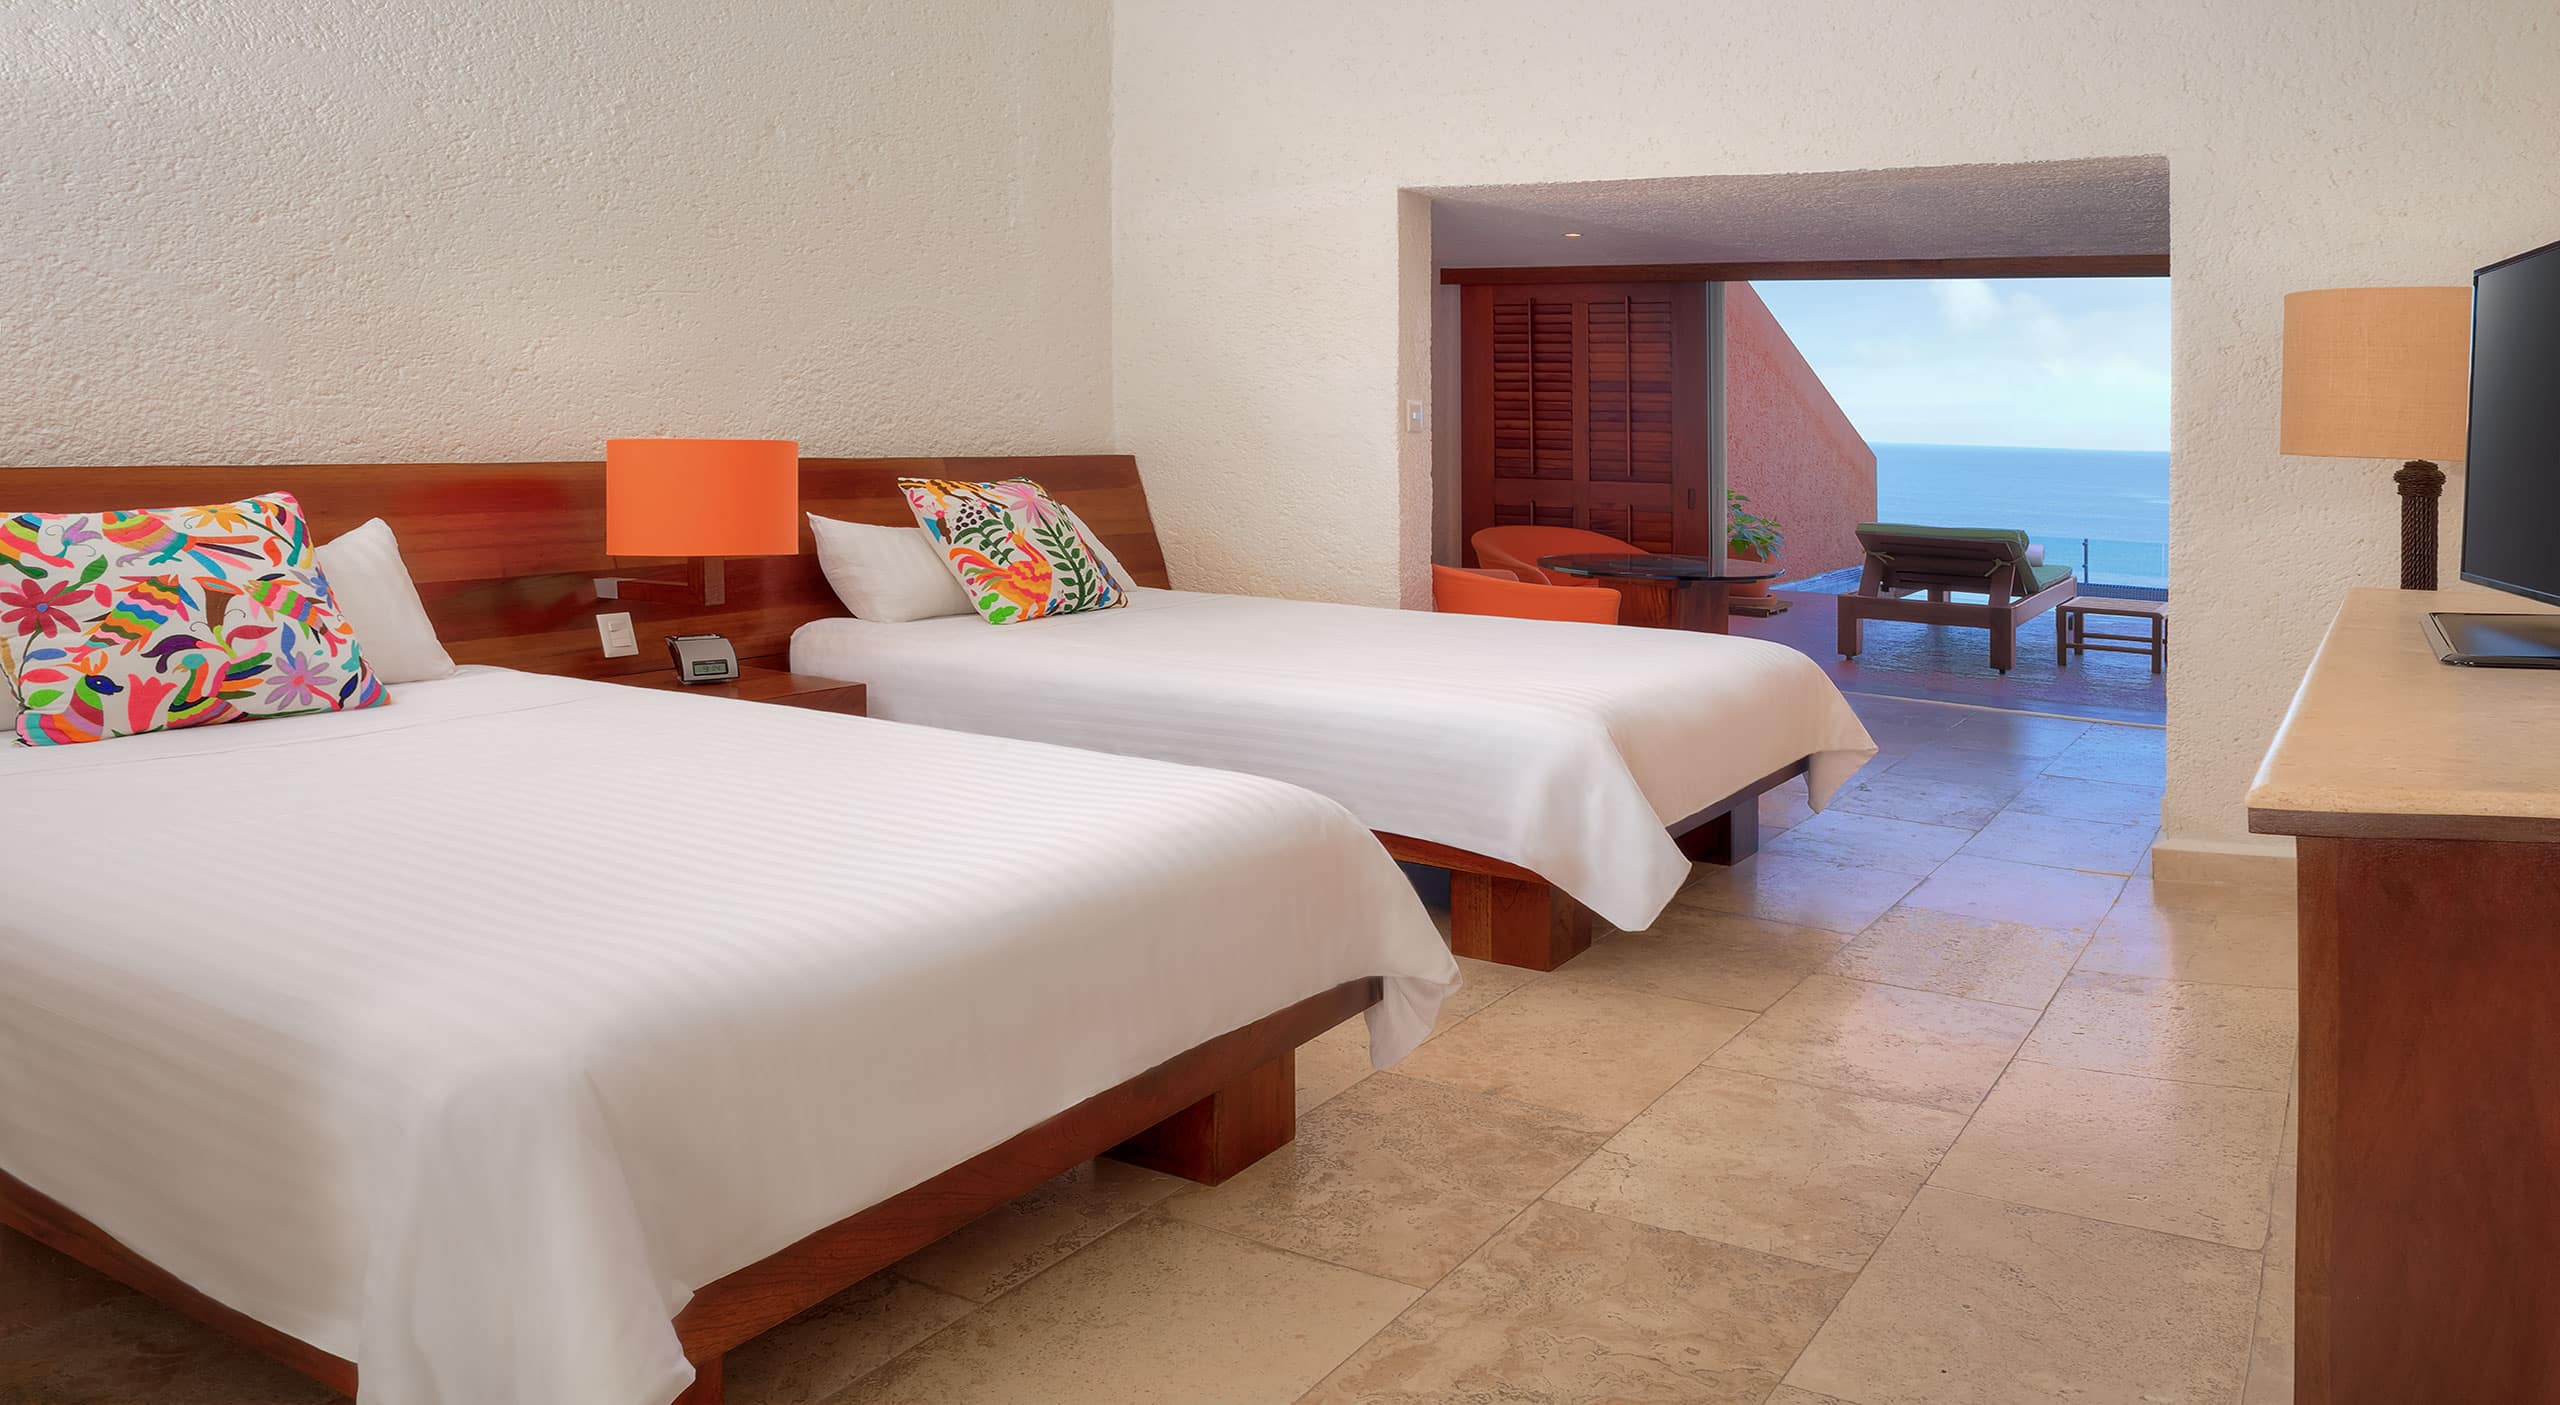 Emperador suite at Hotel Las Brisas Ixtapa